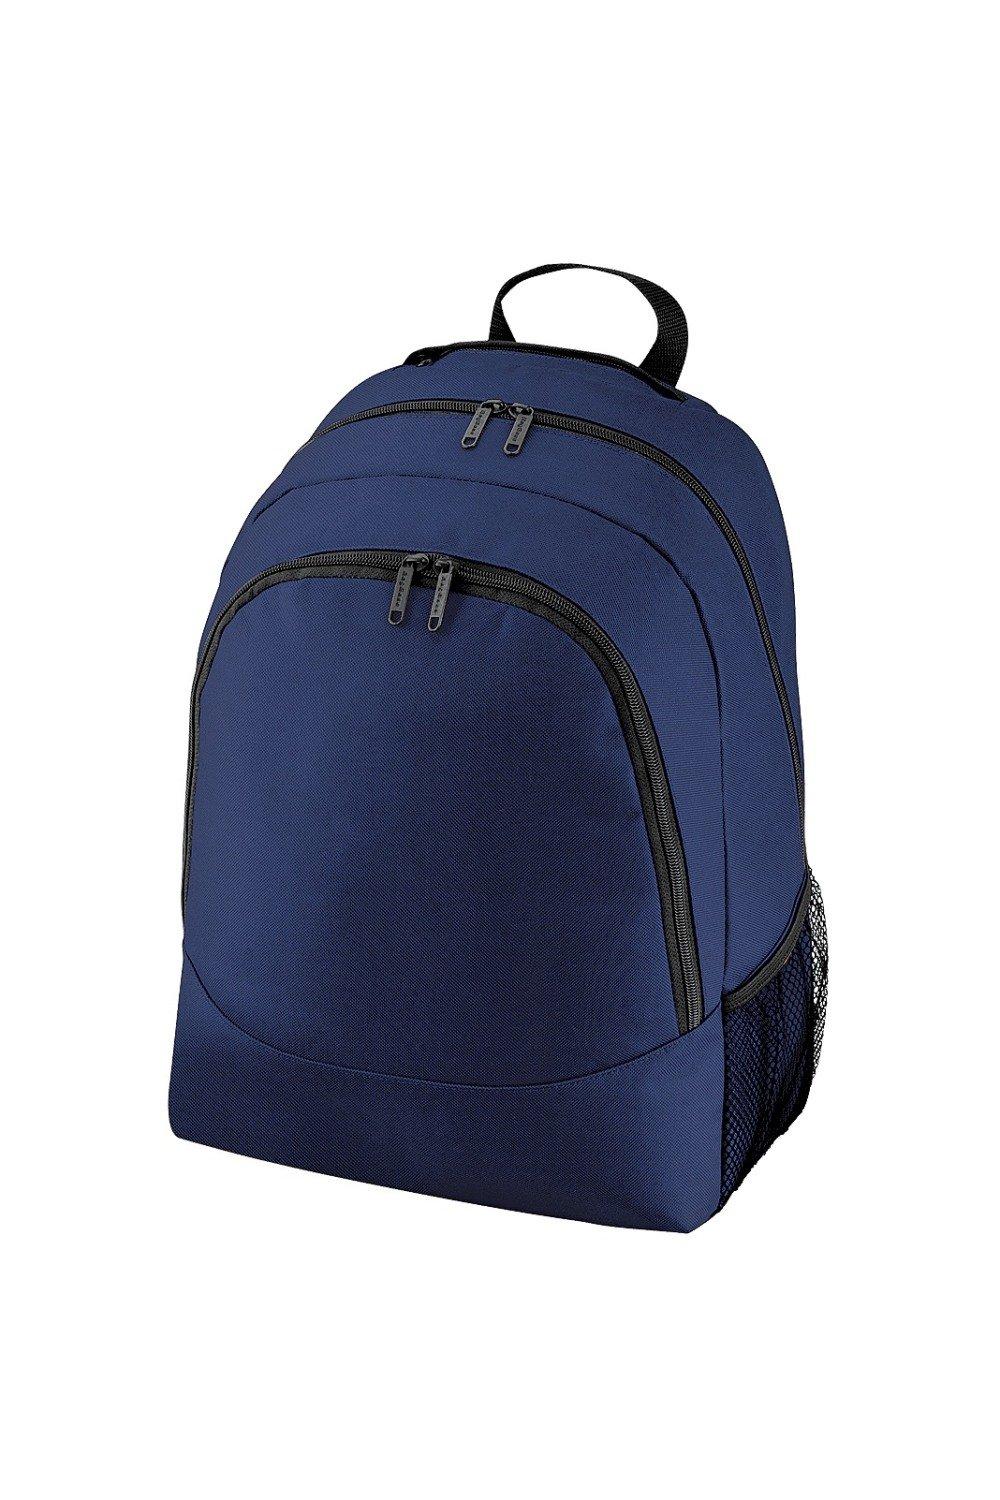 Универсальный многоцелевой рюкзак/рюкзак/сумка (18 литров) Bagbase, темно-синий чехол задняя панель накладка бампер mypads mp3 для huawei honor 6 plus pe ul00 tl20 tl10 cl00 75 7 противоударный